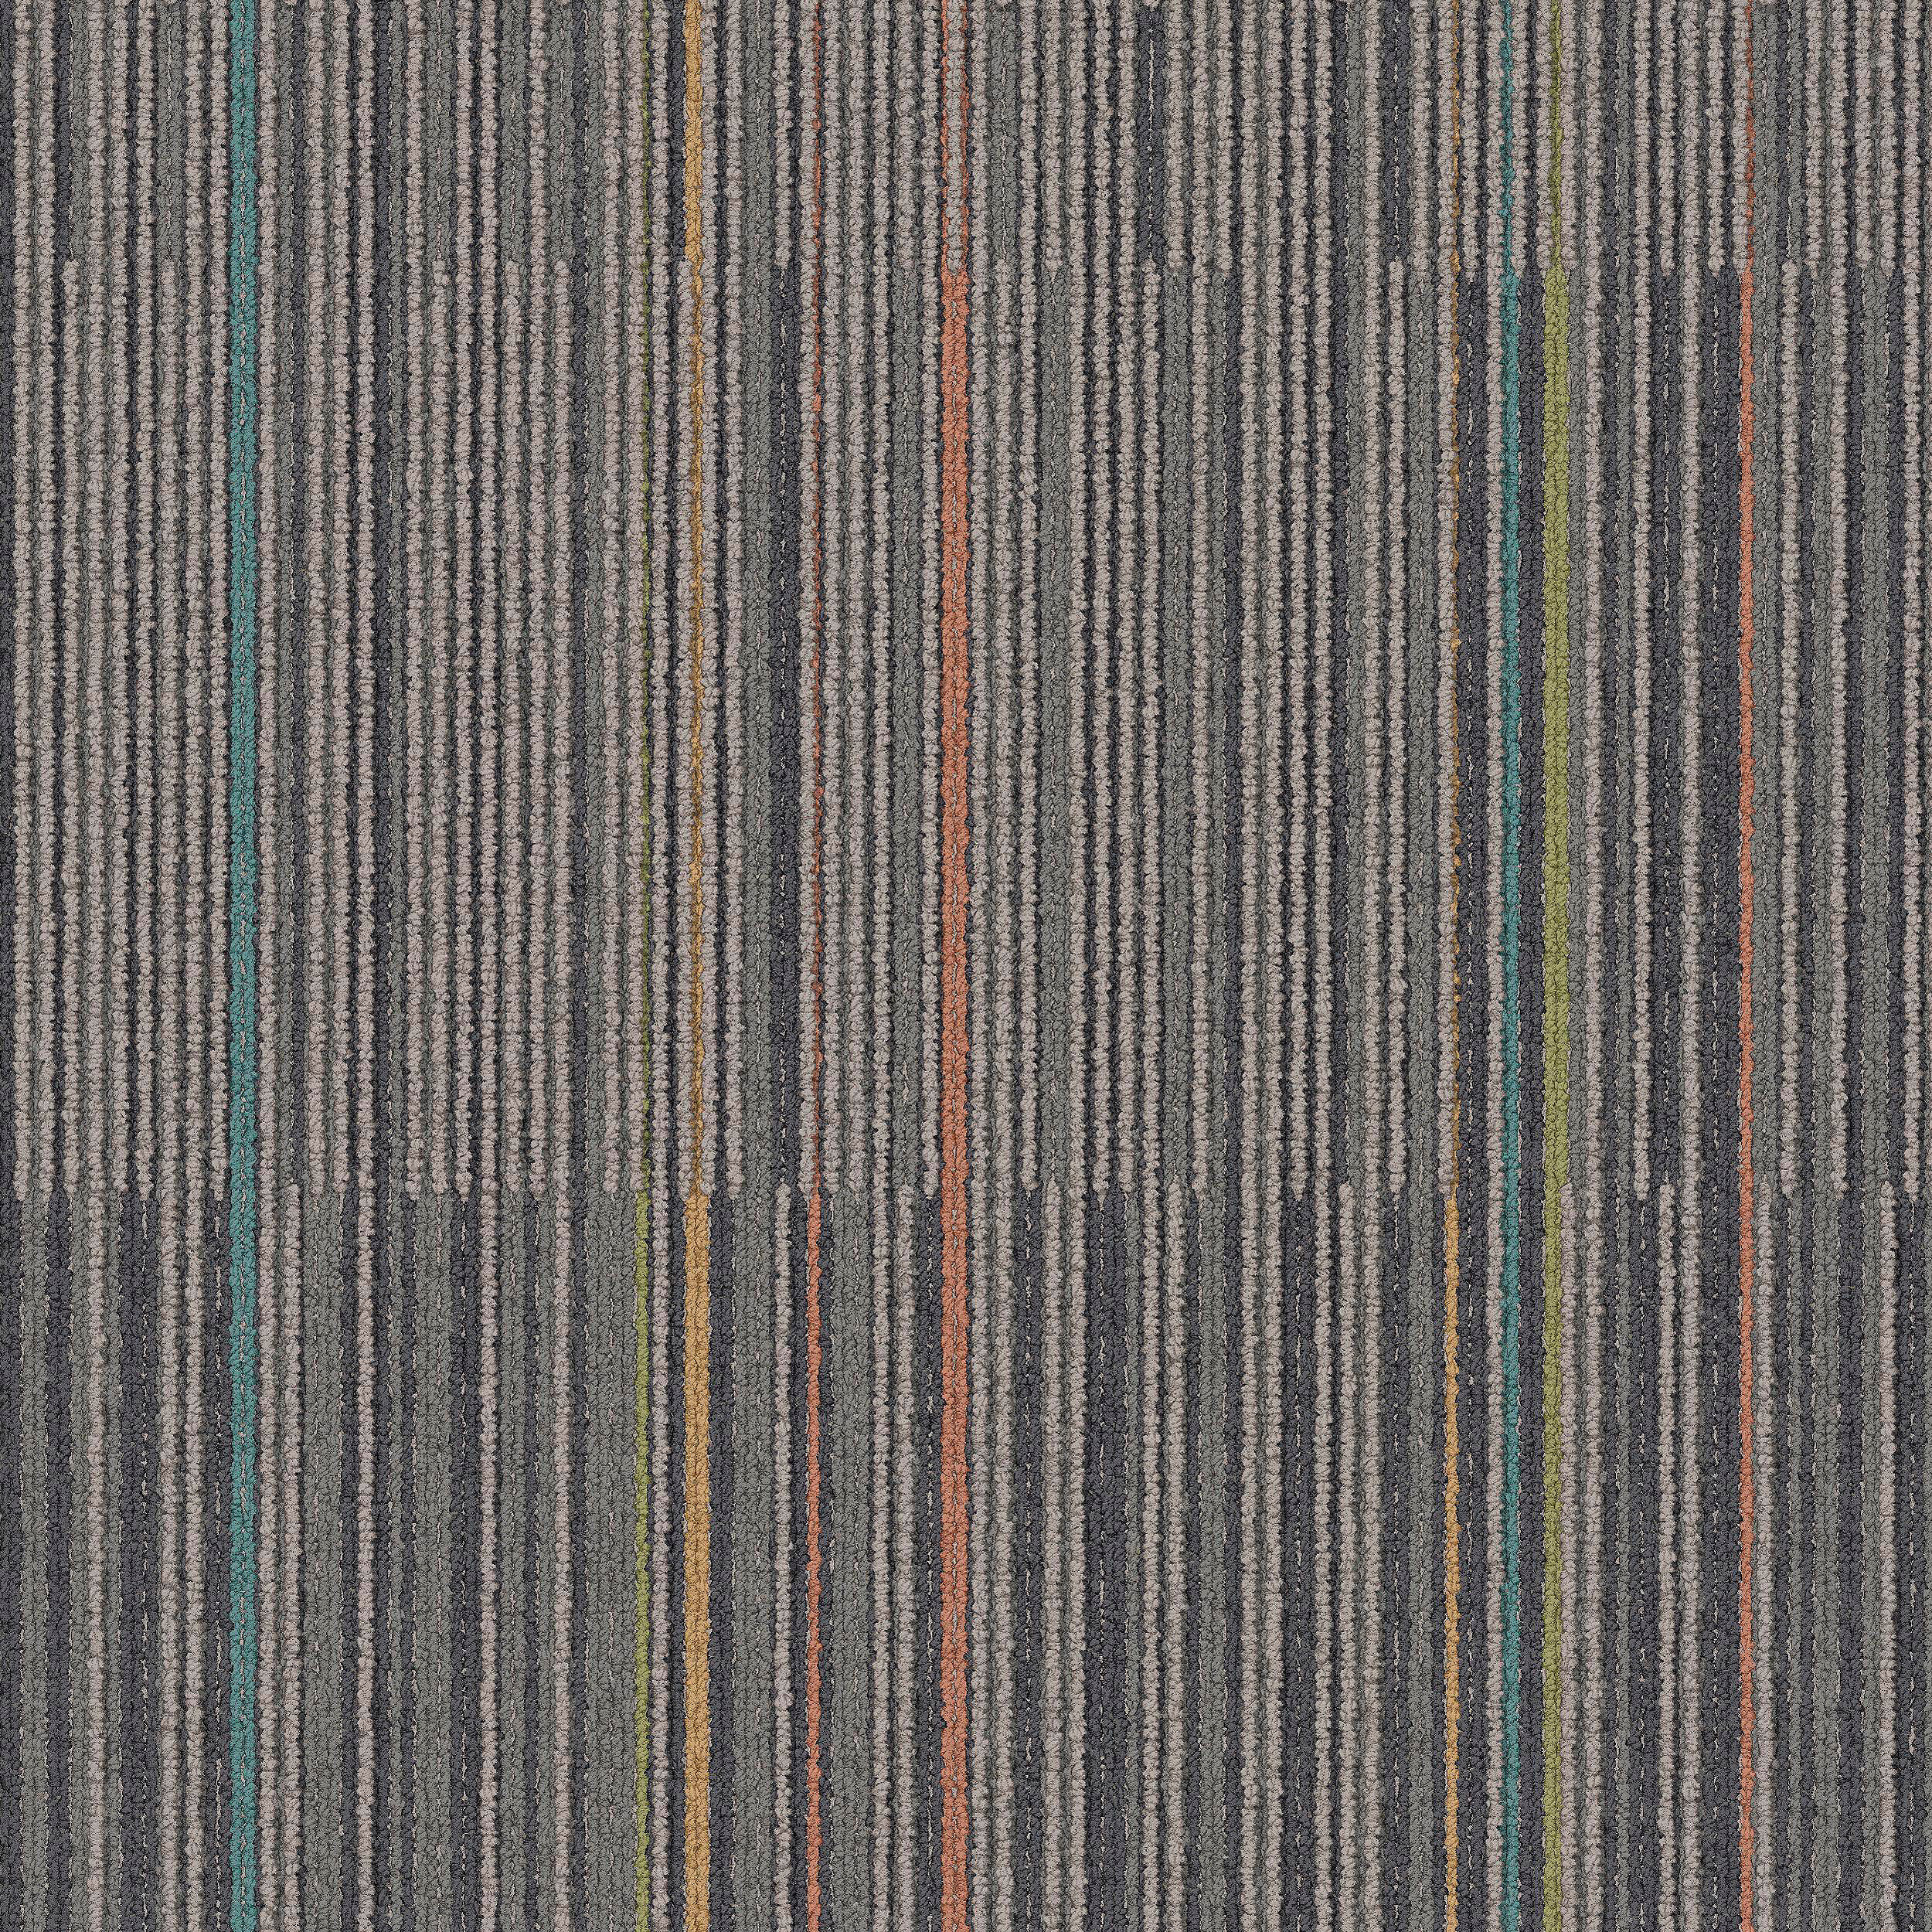 Lima Colores Carpet Tile In Garbanzo numéro d’image 7